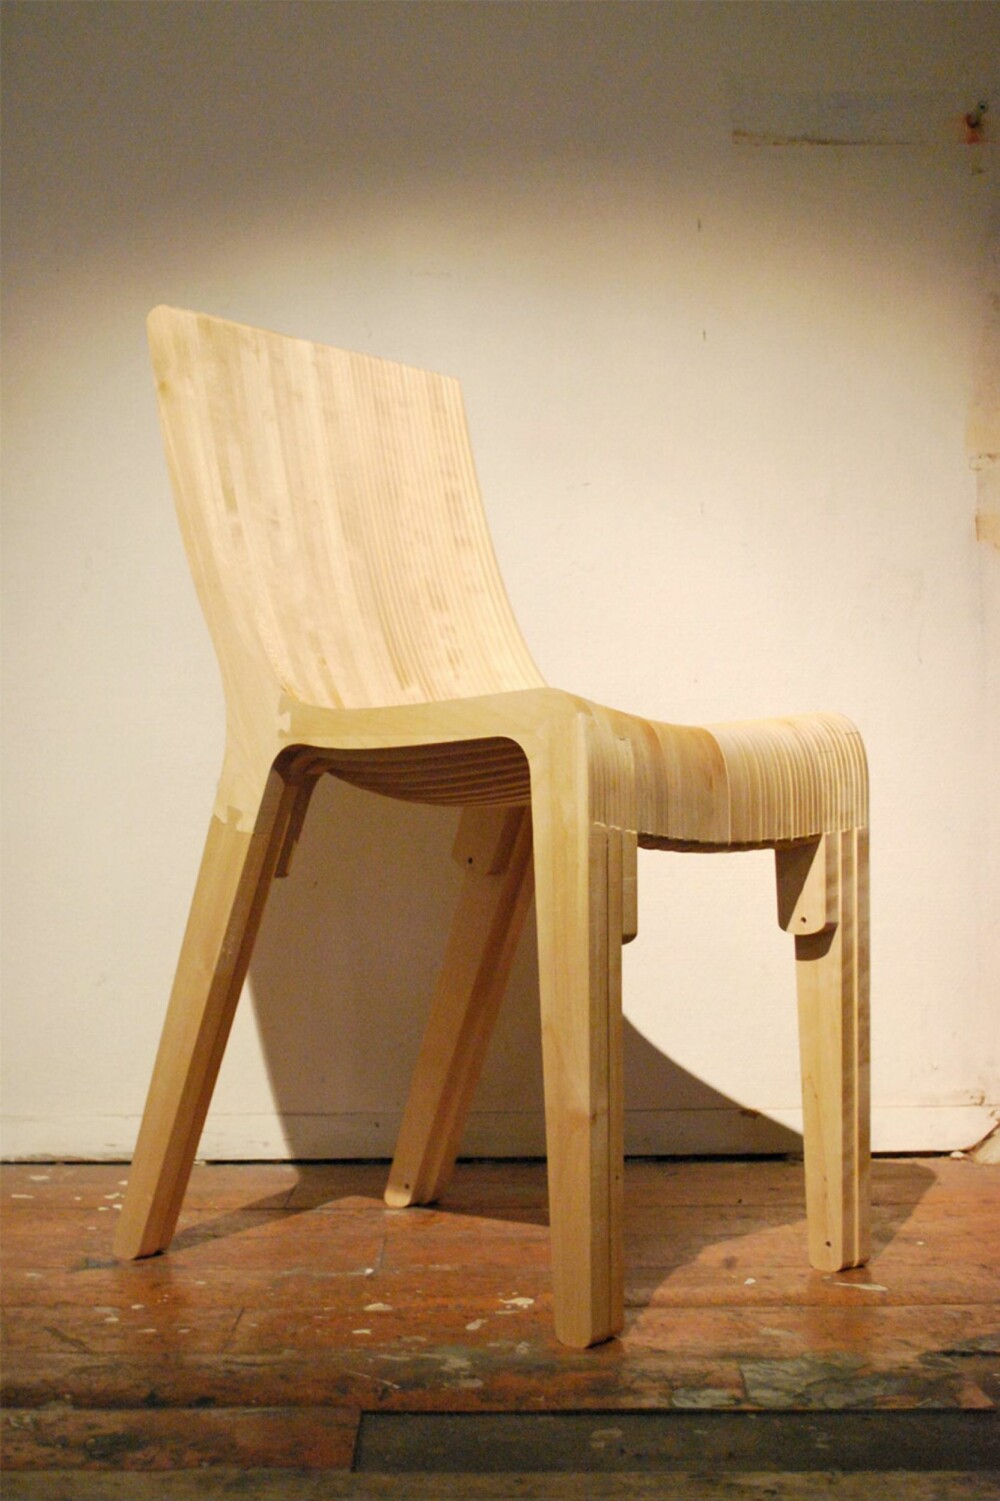 NORSK DESIGN: Denne "Lagstolen", designet av Jens Dyvik, er laget i i heltre bjørk som har grodd på Østlandet og sagd på Haugestad sag i Horten. Kunden bestemte selv hvordan profilen på sete og rygg skulle være. Pris per unik skreddersydd stol er 8.000,- inkl MVA. Standard form er 5.000,-. Stolene kan også fås i deler, som byggesett man limer selv, og laster ned gratis.